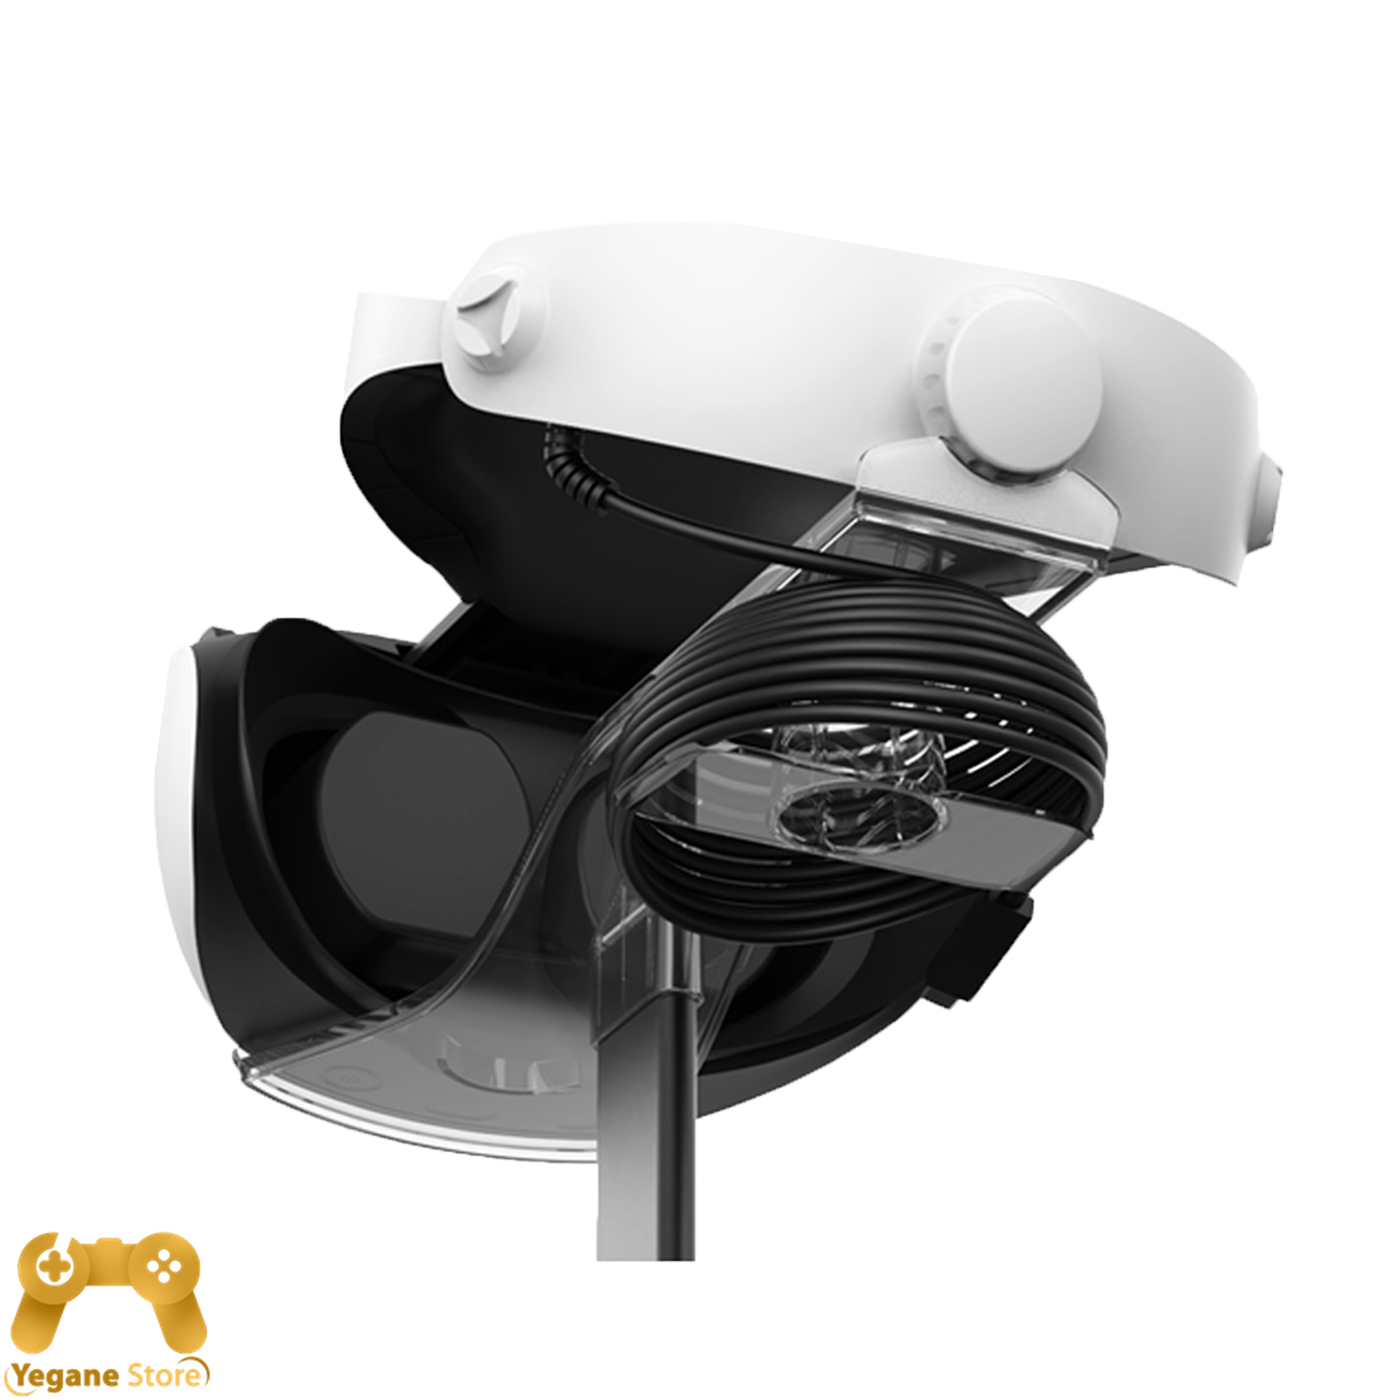 خرید کیت پایه شارژ Maxx Tech VR برای PSVR2